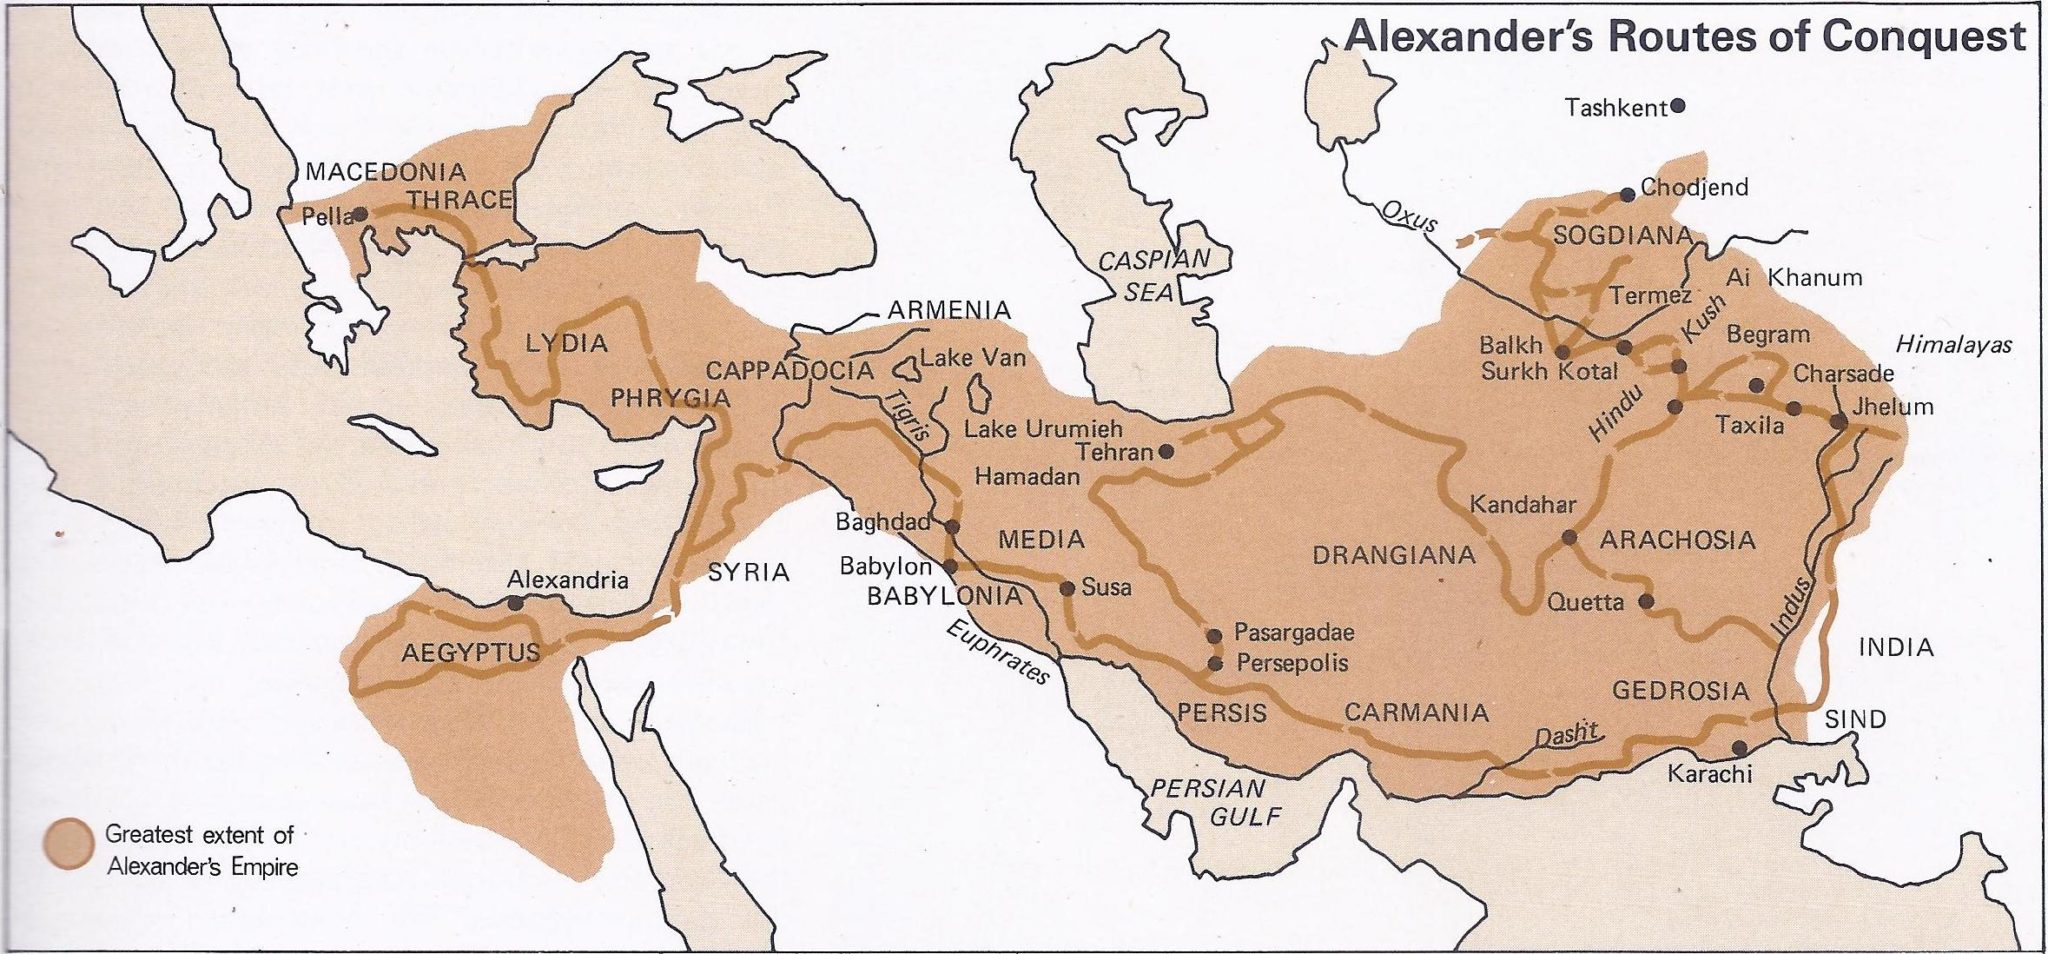 Царская дорога относится к древней персии